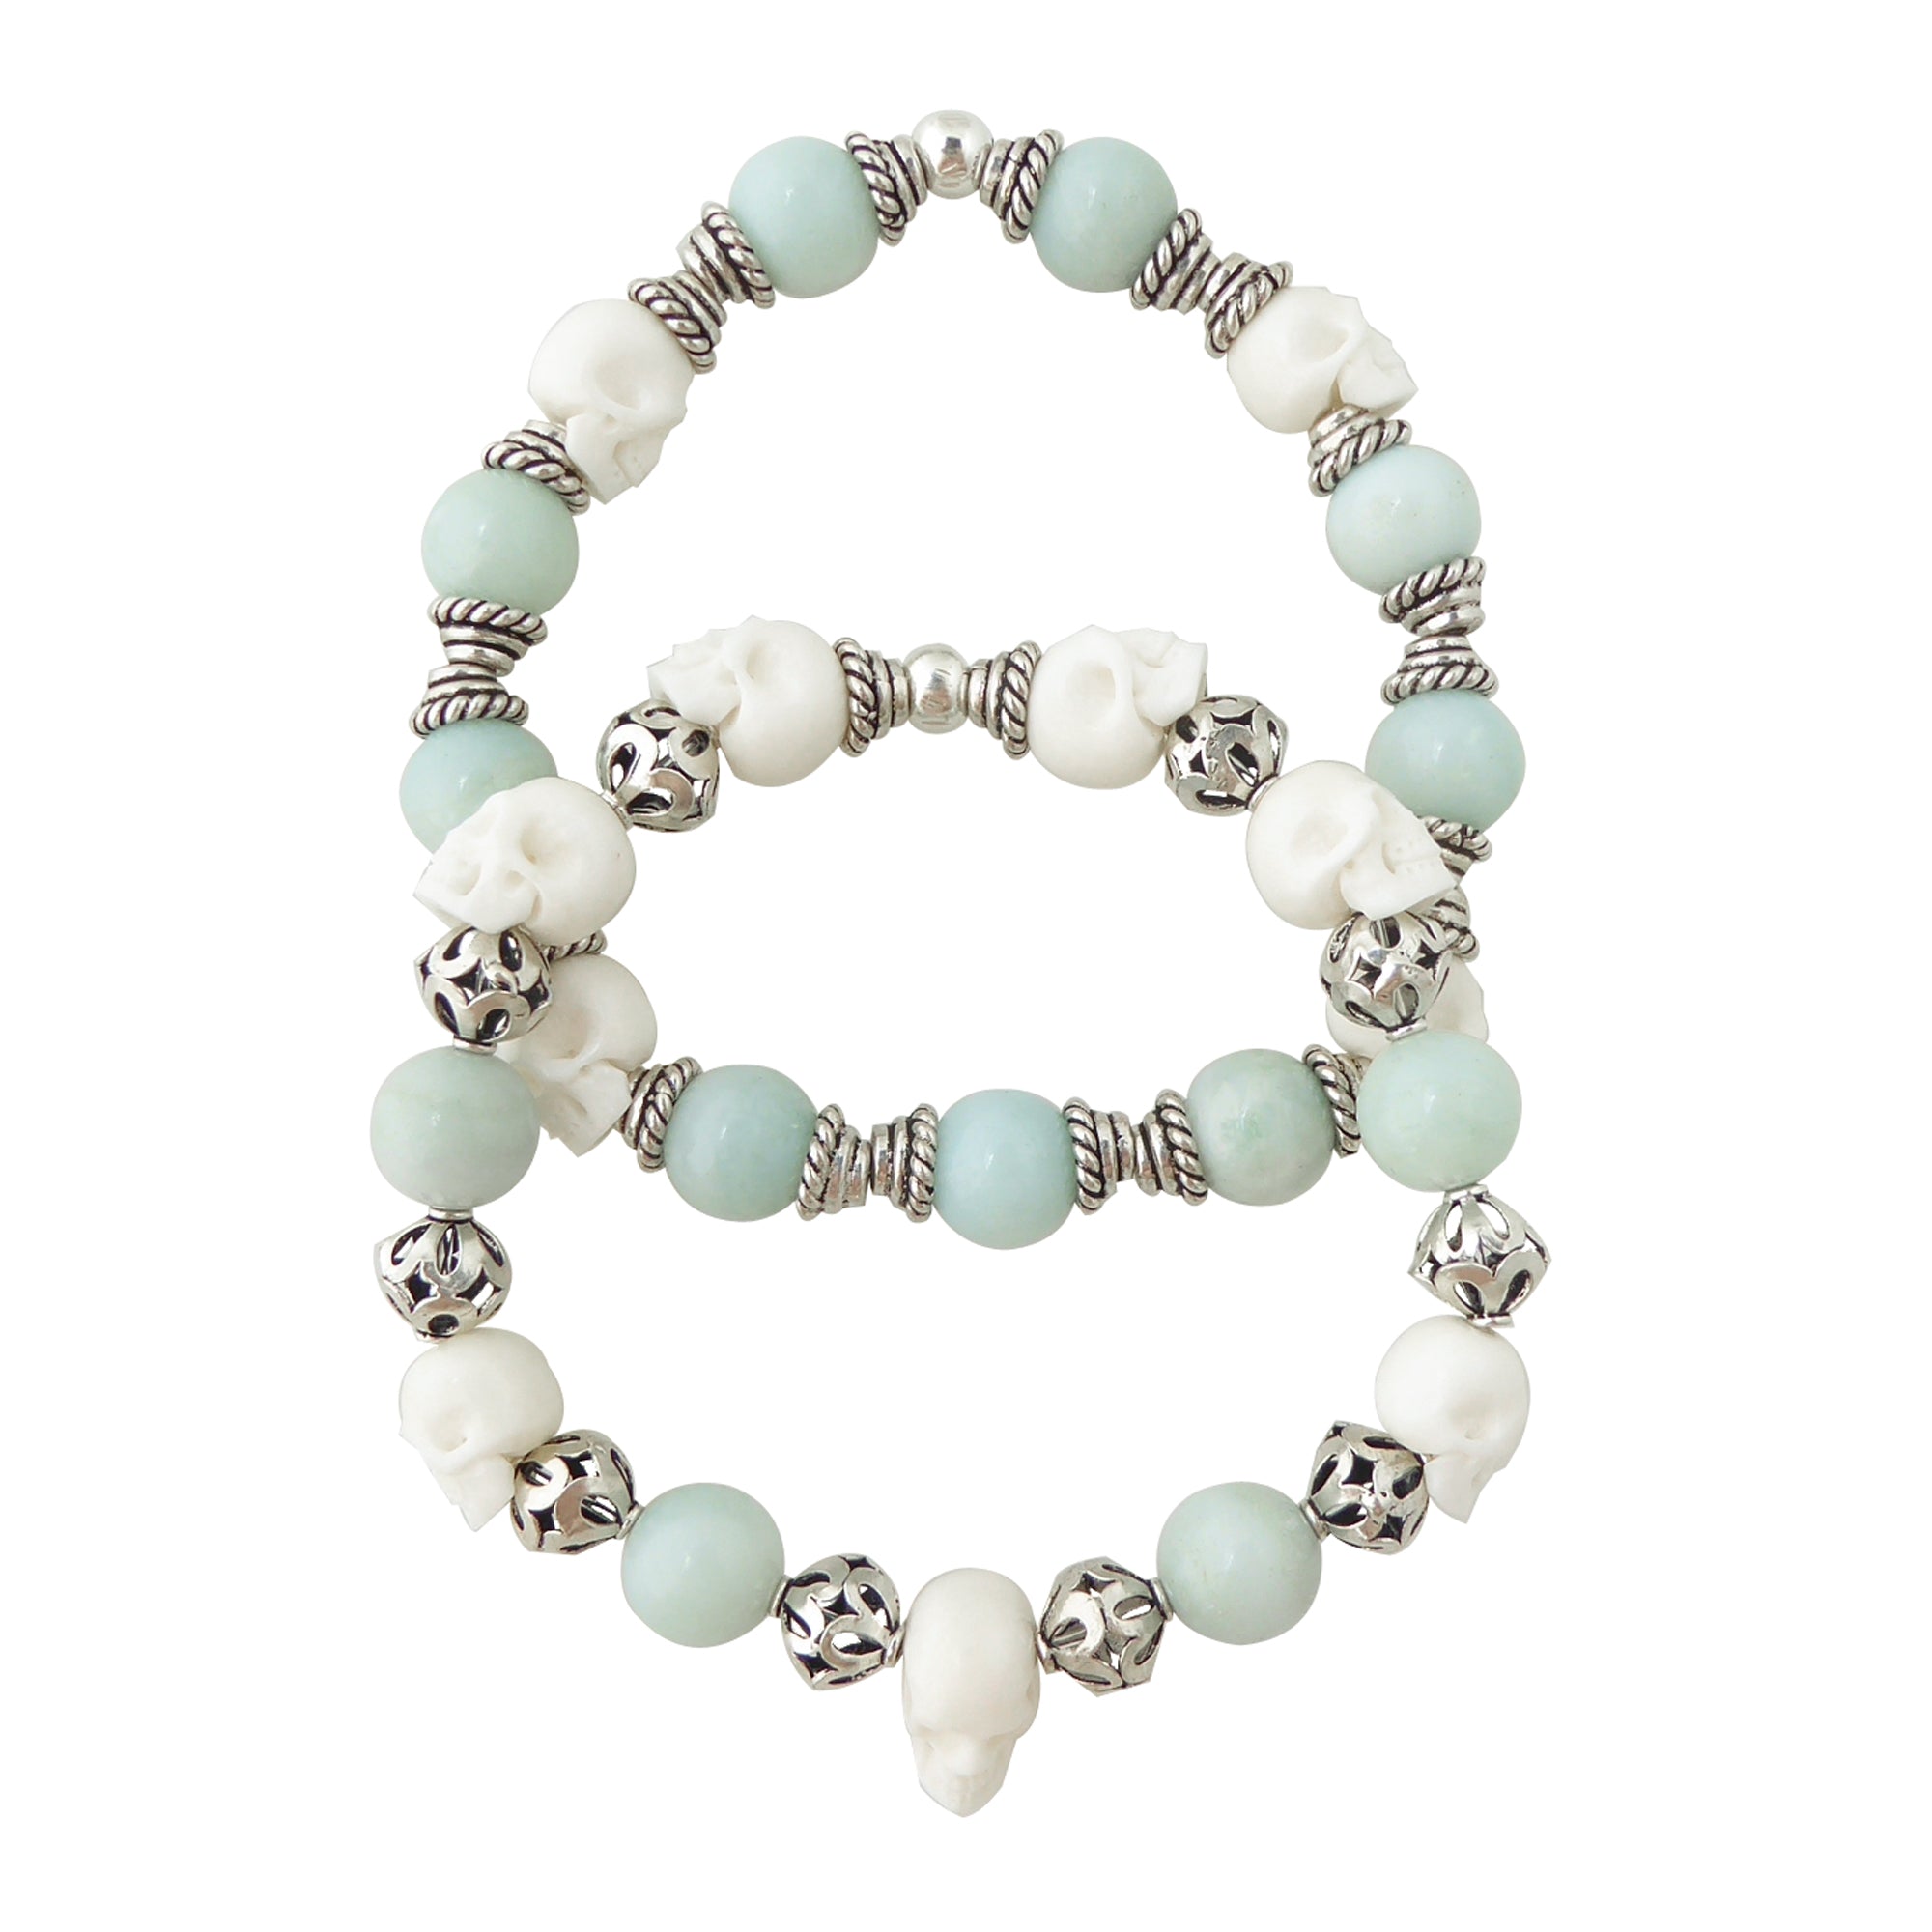 Jade and skull bracelet set by Jenny Dayco 1